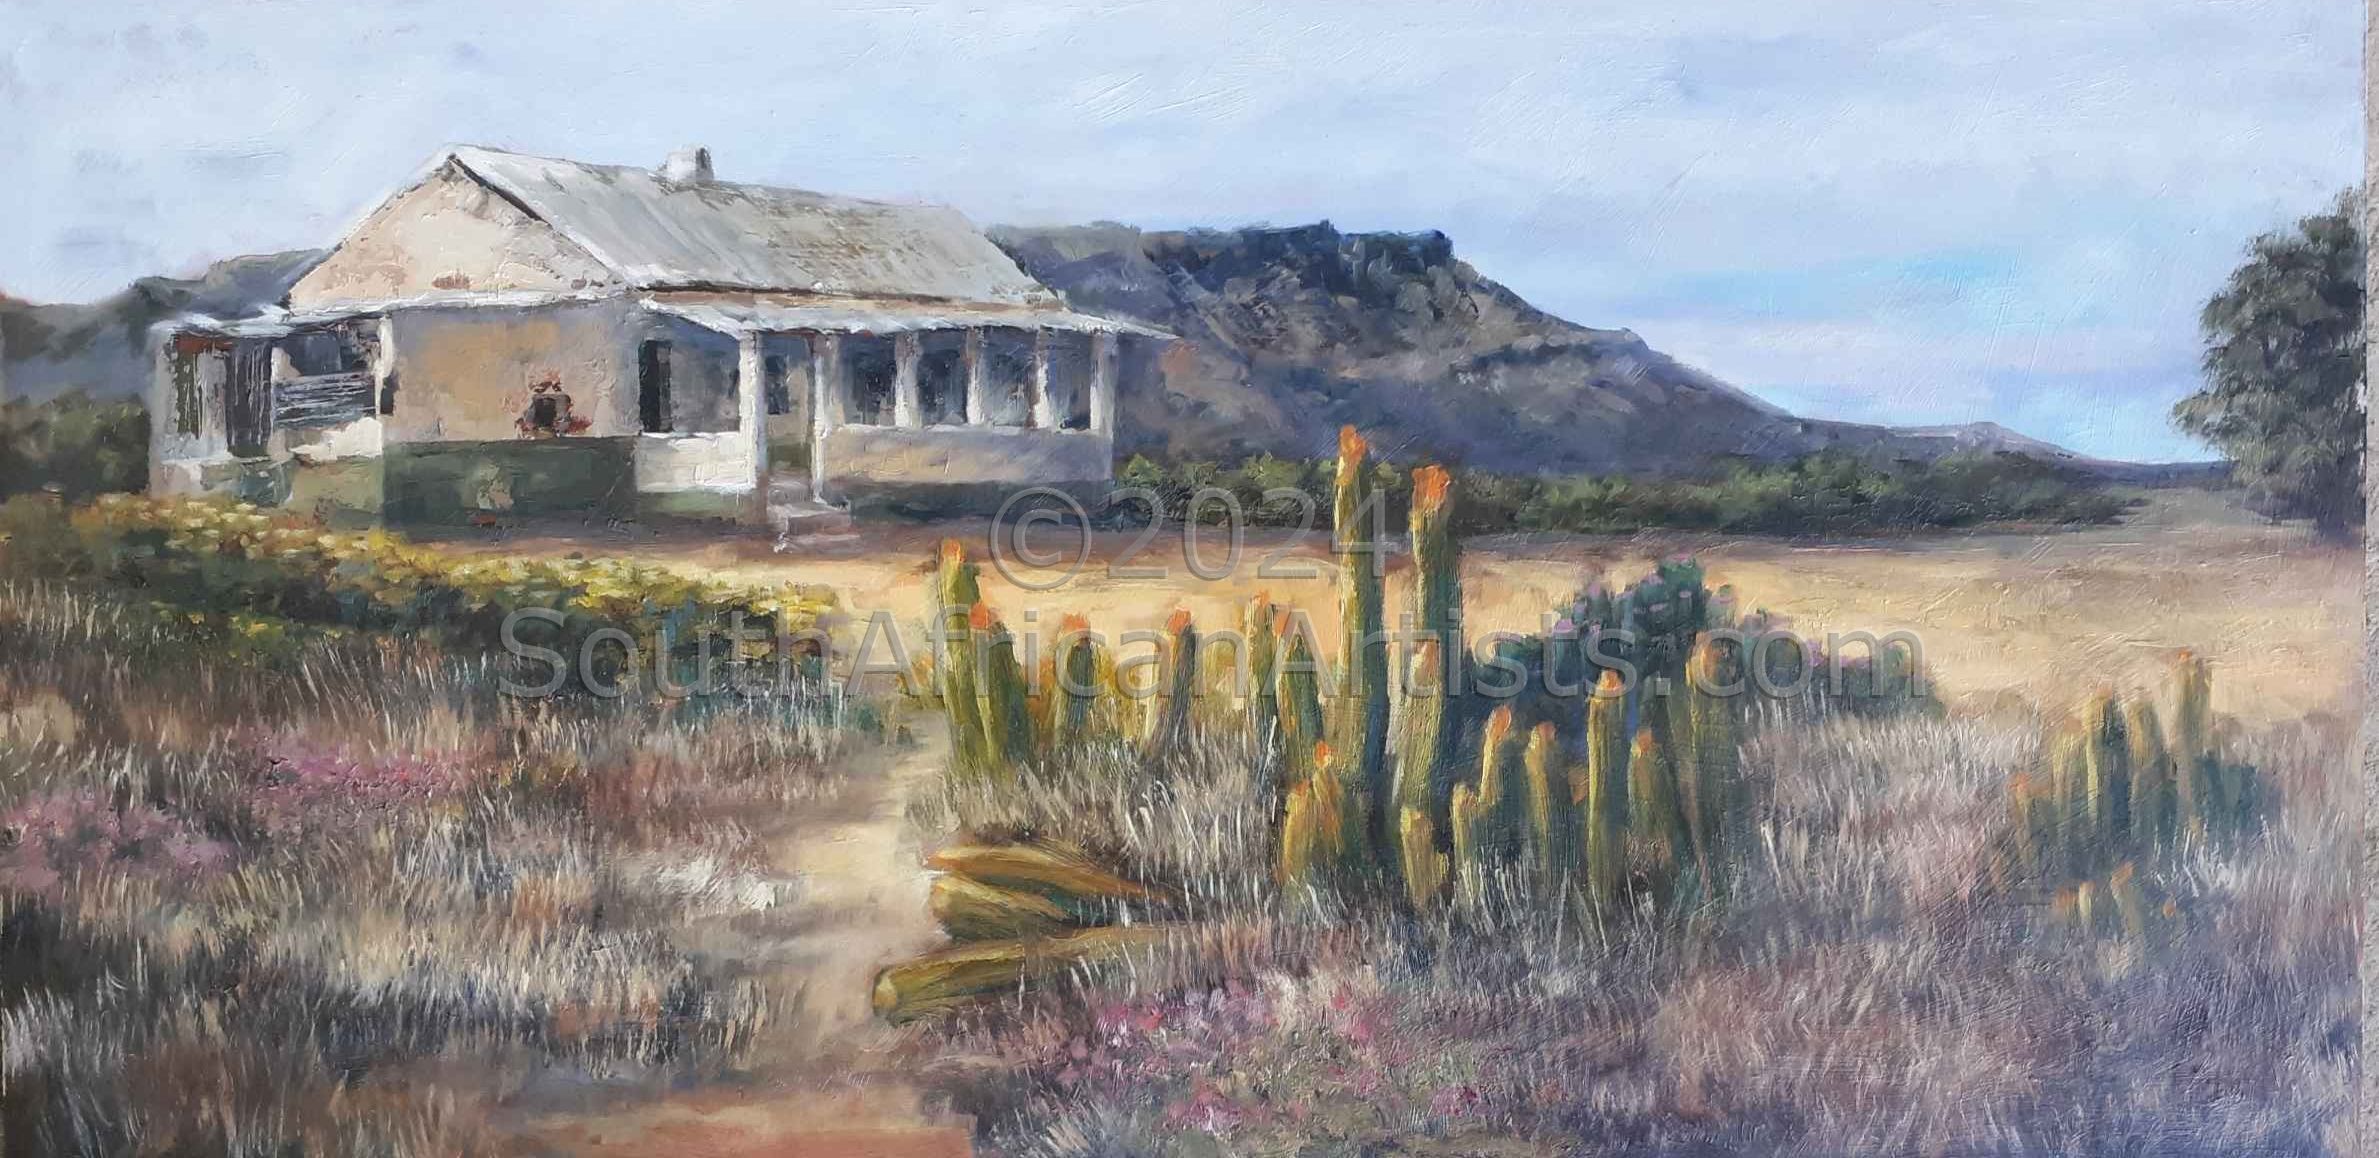 Little Cacti House